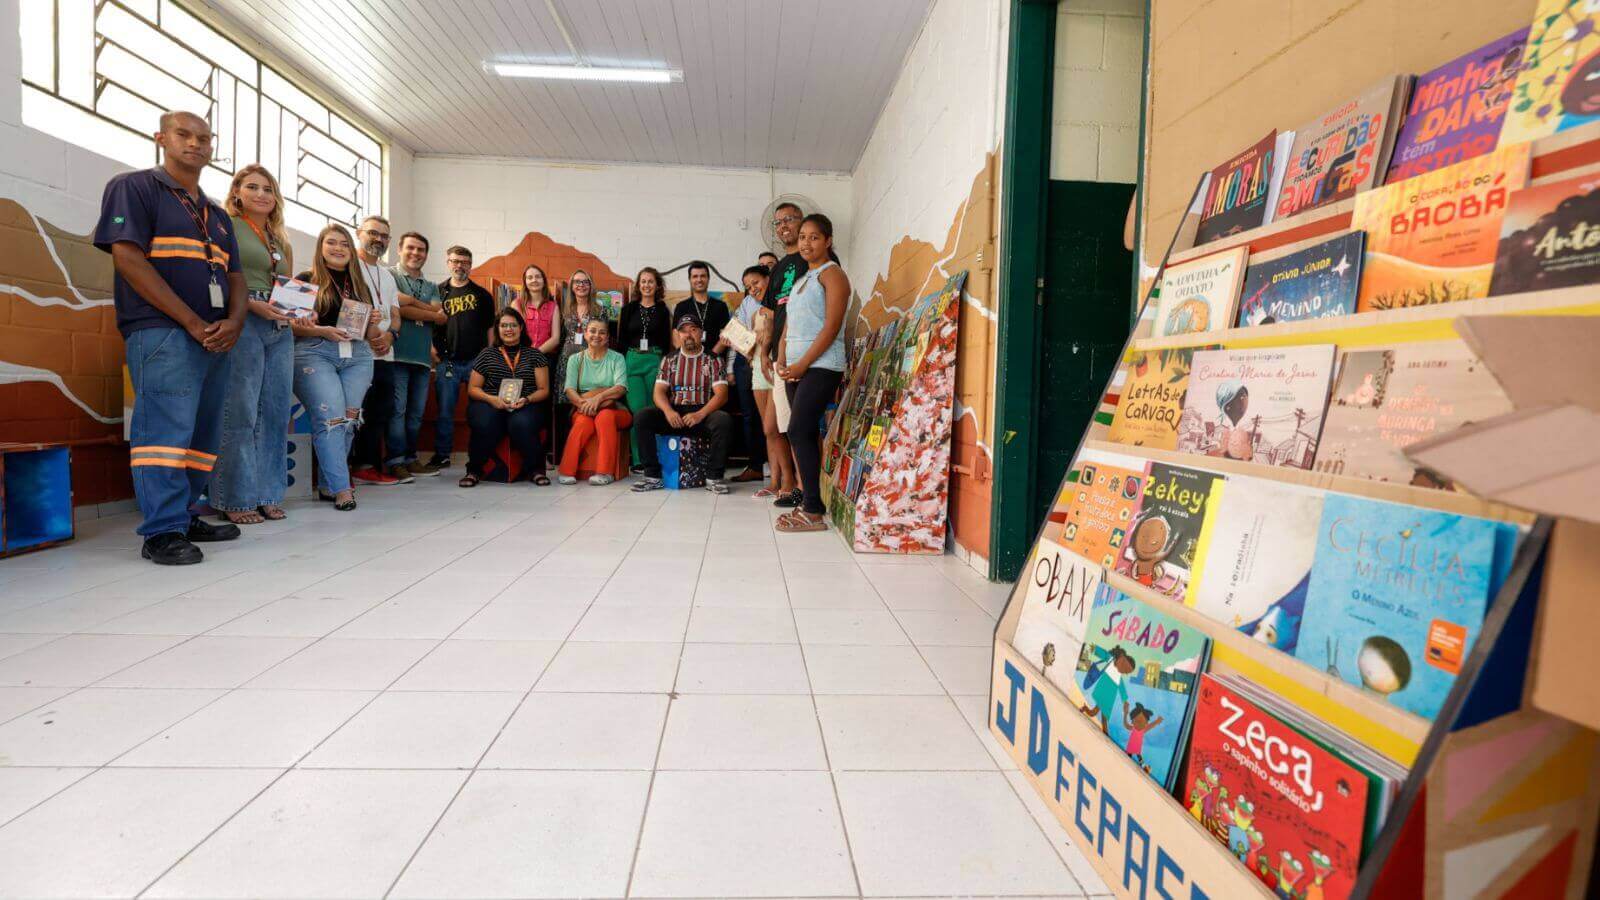 Grupo de pessoas, homens e mulheres, posando em uma sala, uma nova biblioteca comunitária